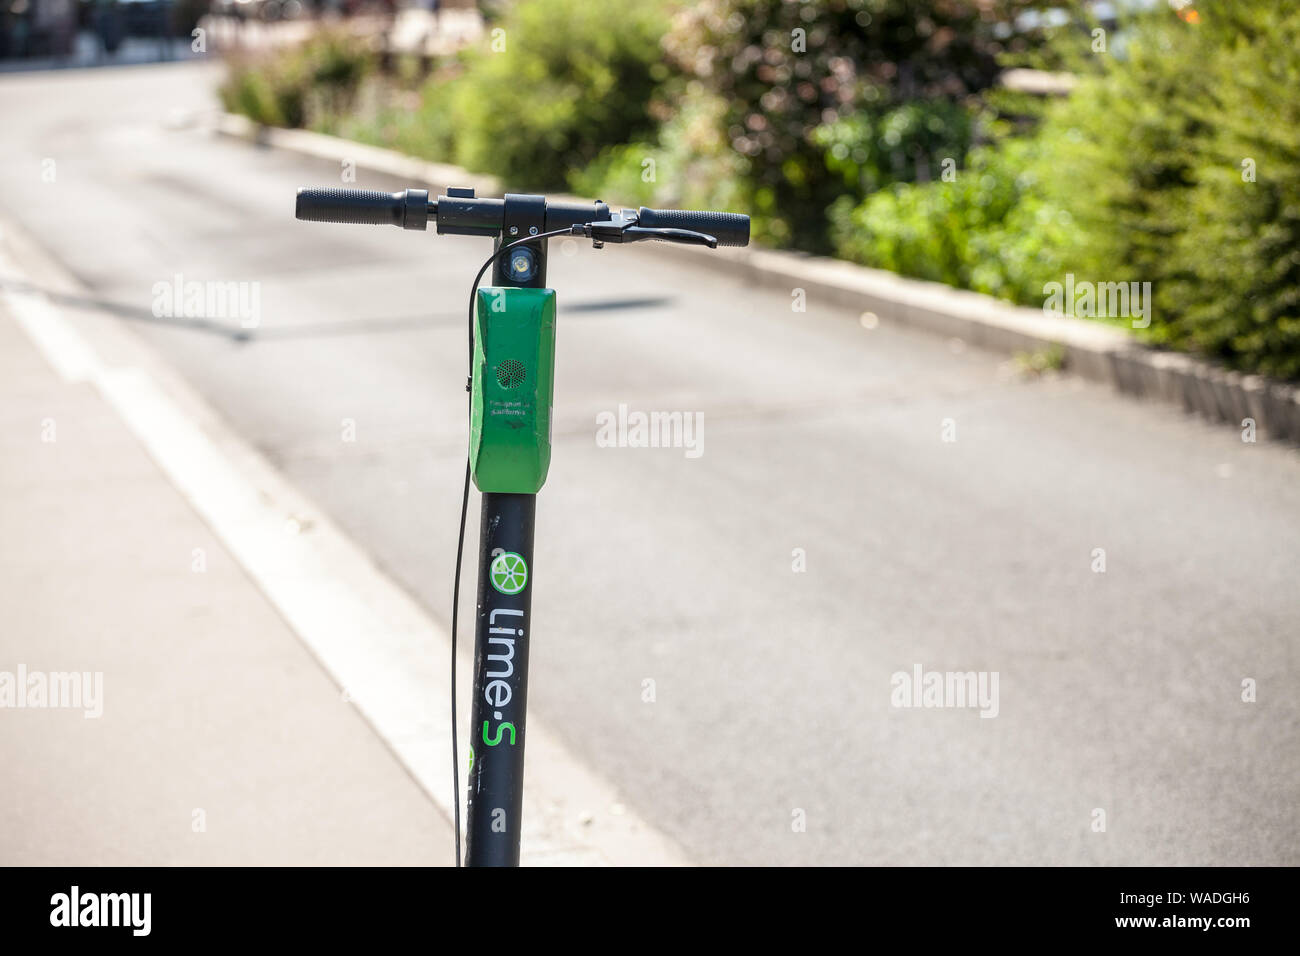 LYON, FRANCIA - Julio 13, 2019: Cal logotipo en uno pf sus scooters eléctricos en Lyon. Cal es una empresa de transporte especializada en dockless electric s Foto de stock